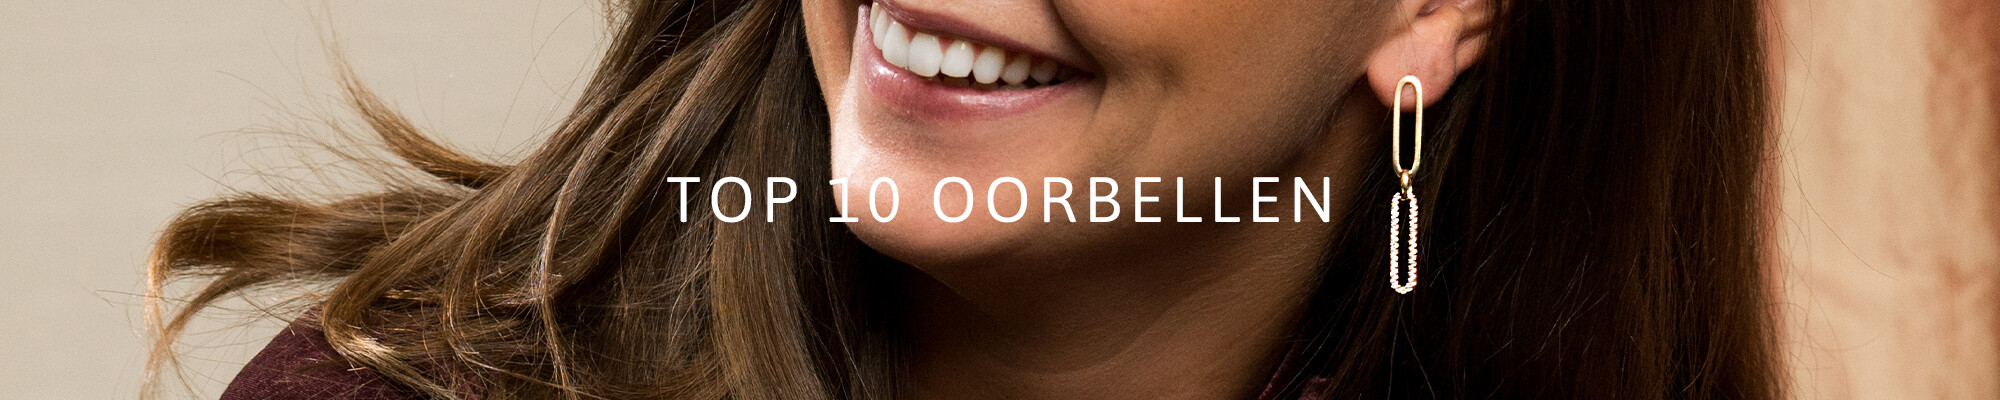 Top 10 Oorbellen